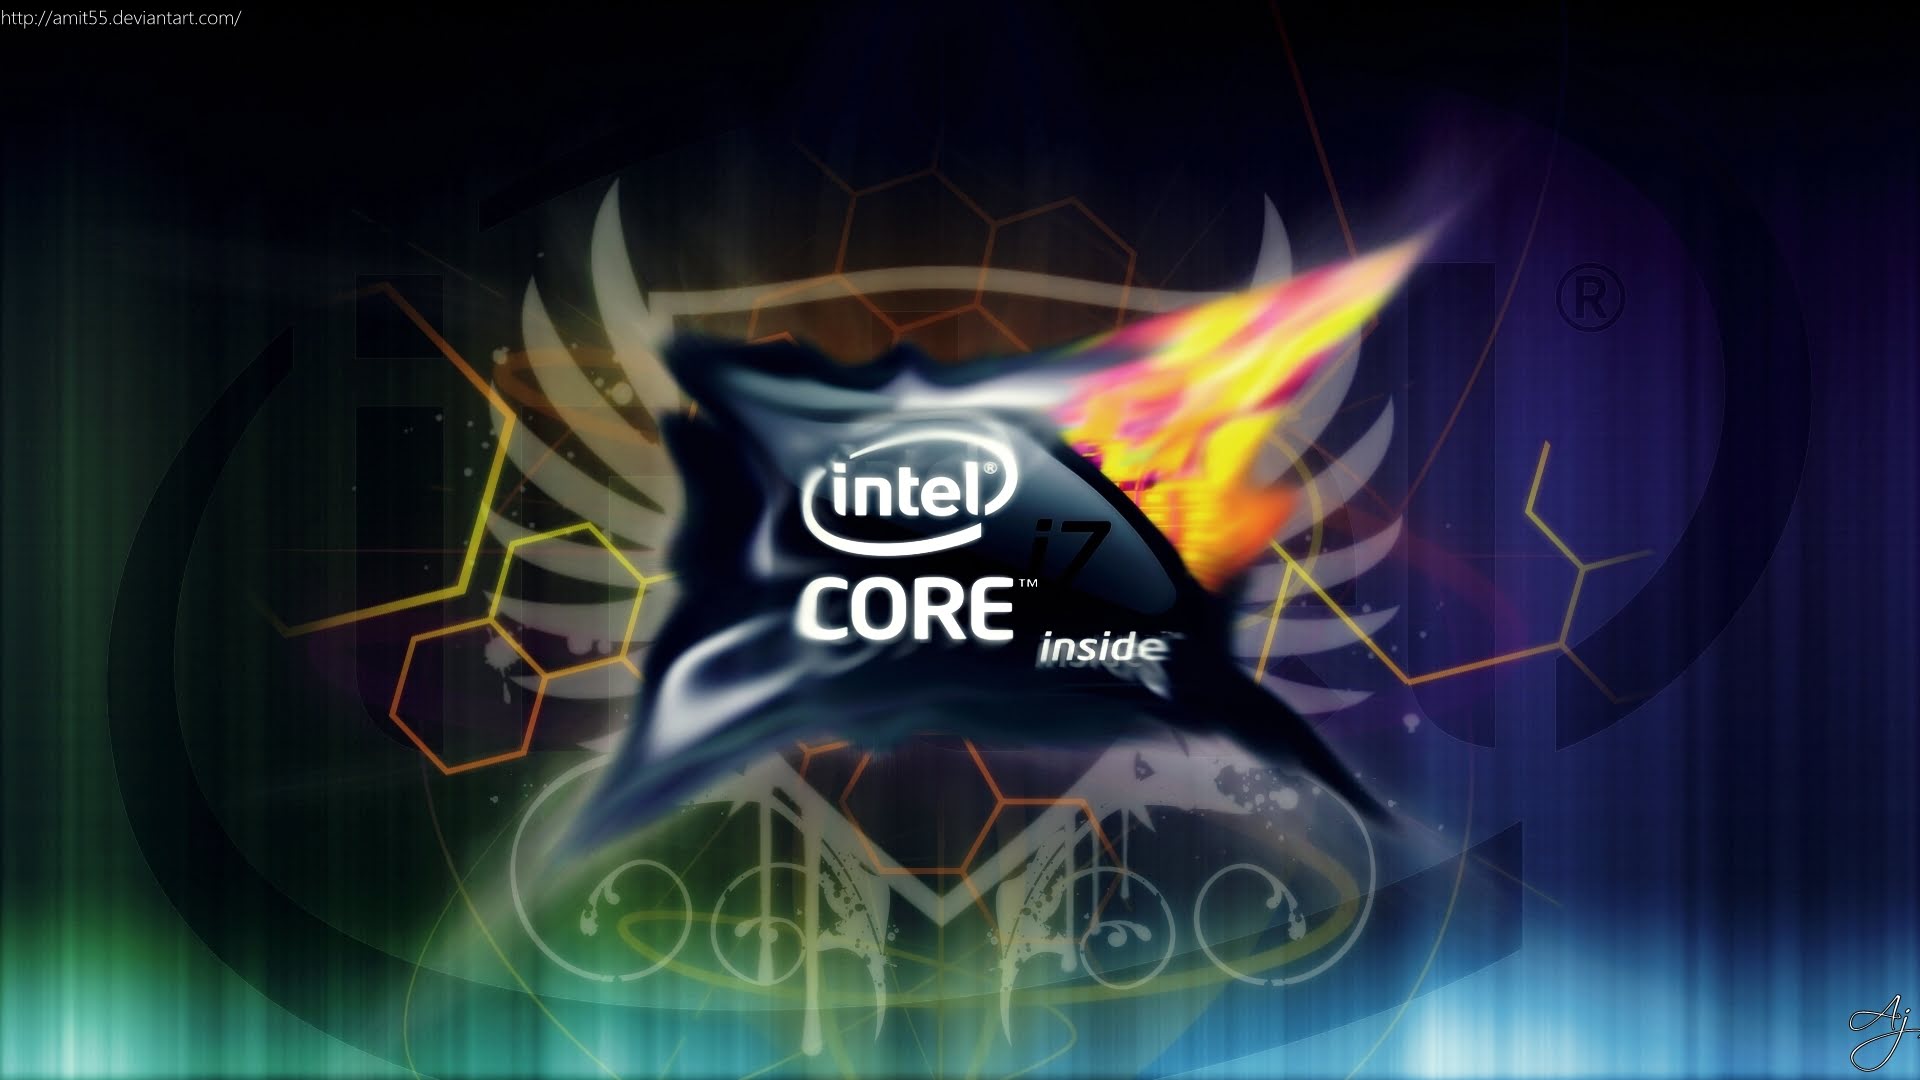 Core i3 games. Intel Core i7 1920 1080. Заставка Интел. Обои на рабочий стол Intel. Intel Core i7 обои.